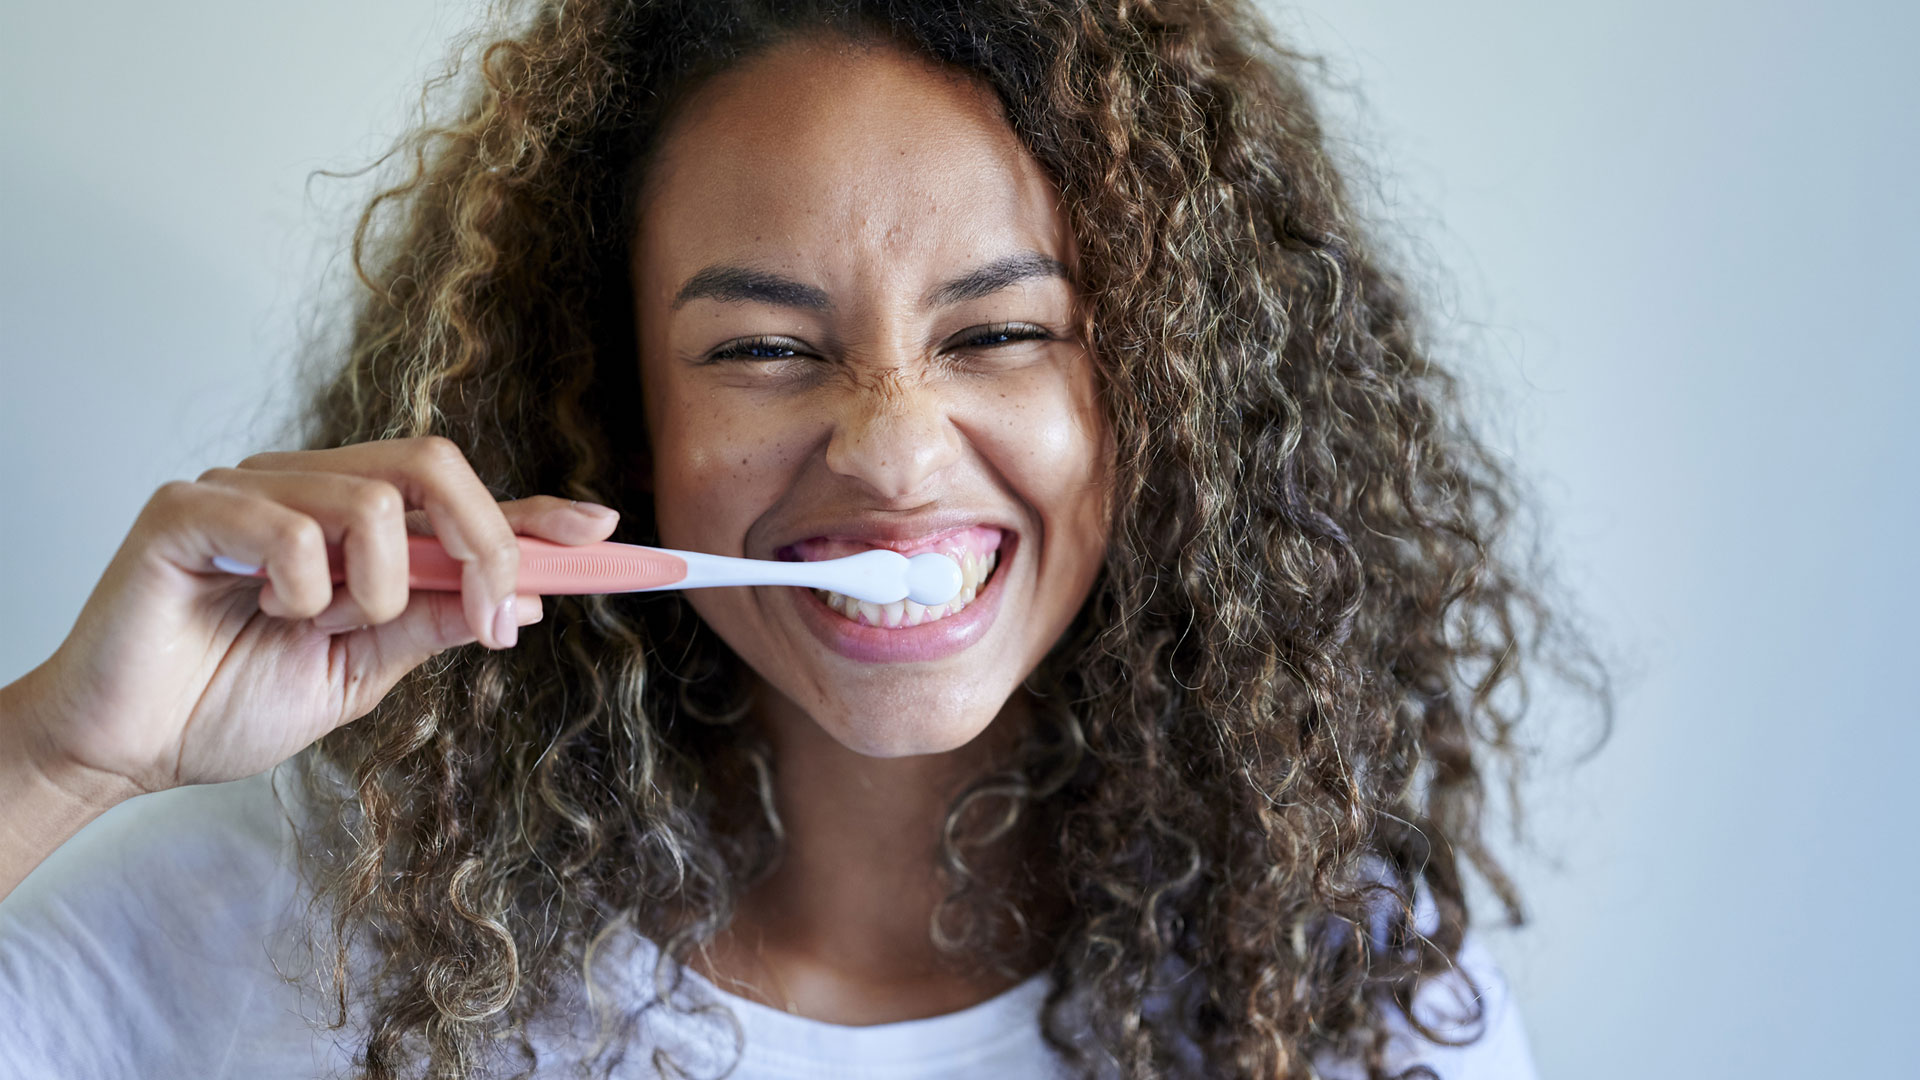 मनुष्य के कितने दांत होते हैं?  छवि दांत ब्रश करती महिला को दिखाती है